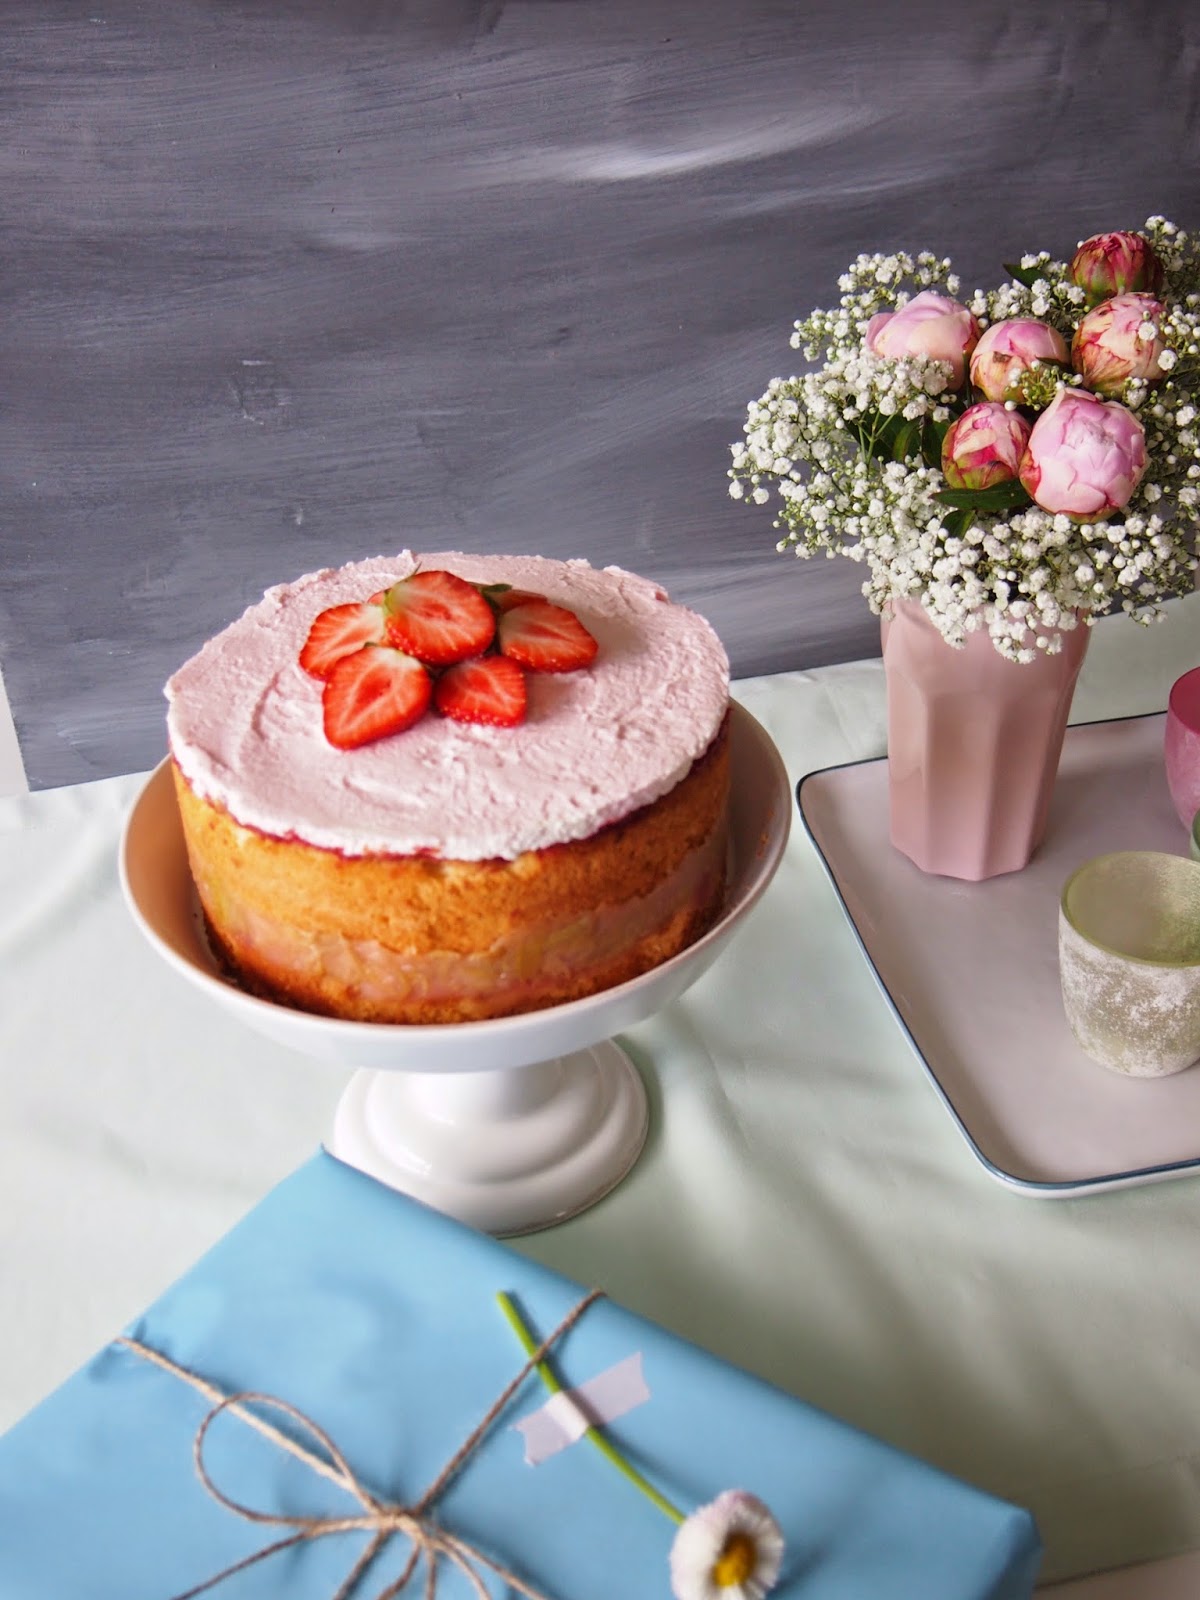 dieZuckerbäckerei: Rhabarber-Prosecco-Erdbeer-Törtchen zum Geburtstag